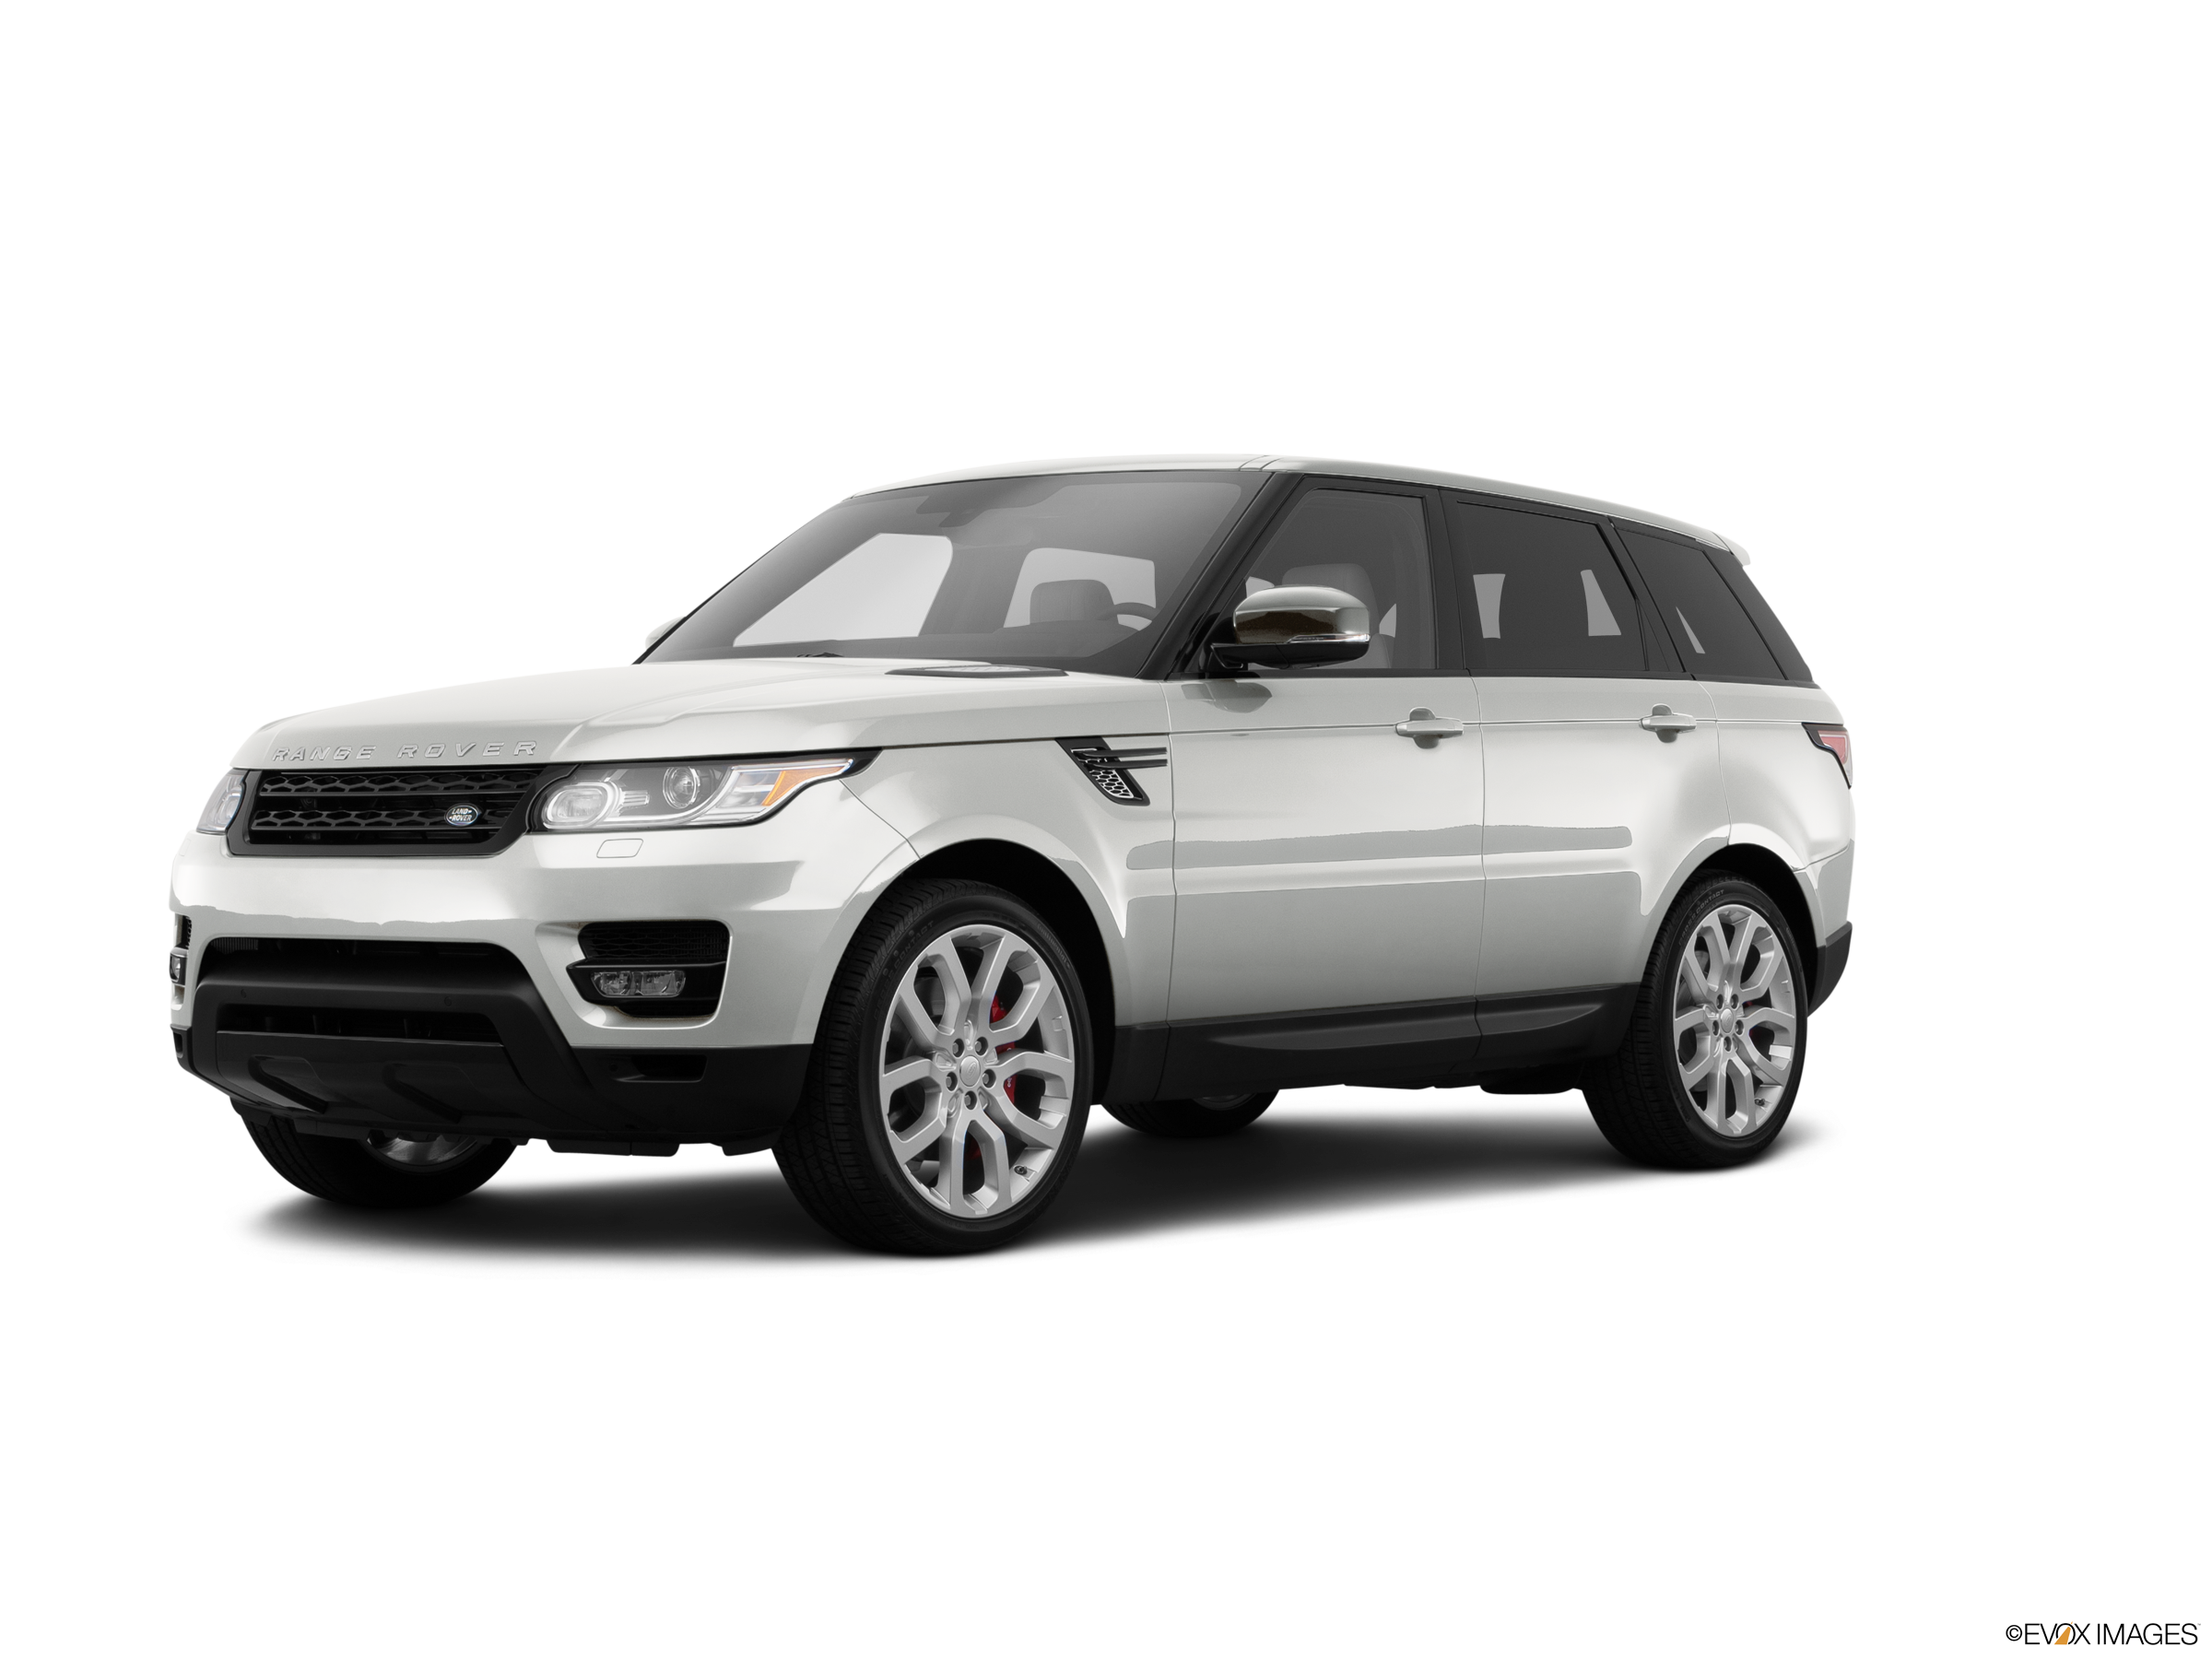 Overvloedig Necklet Voorkeur 2014 Land Rover Range Rover Sport Values & Cars for Sale | Kelley Blue Book